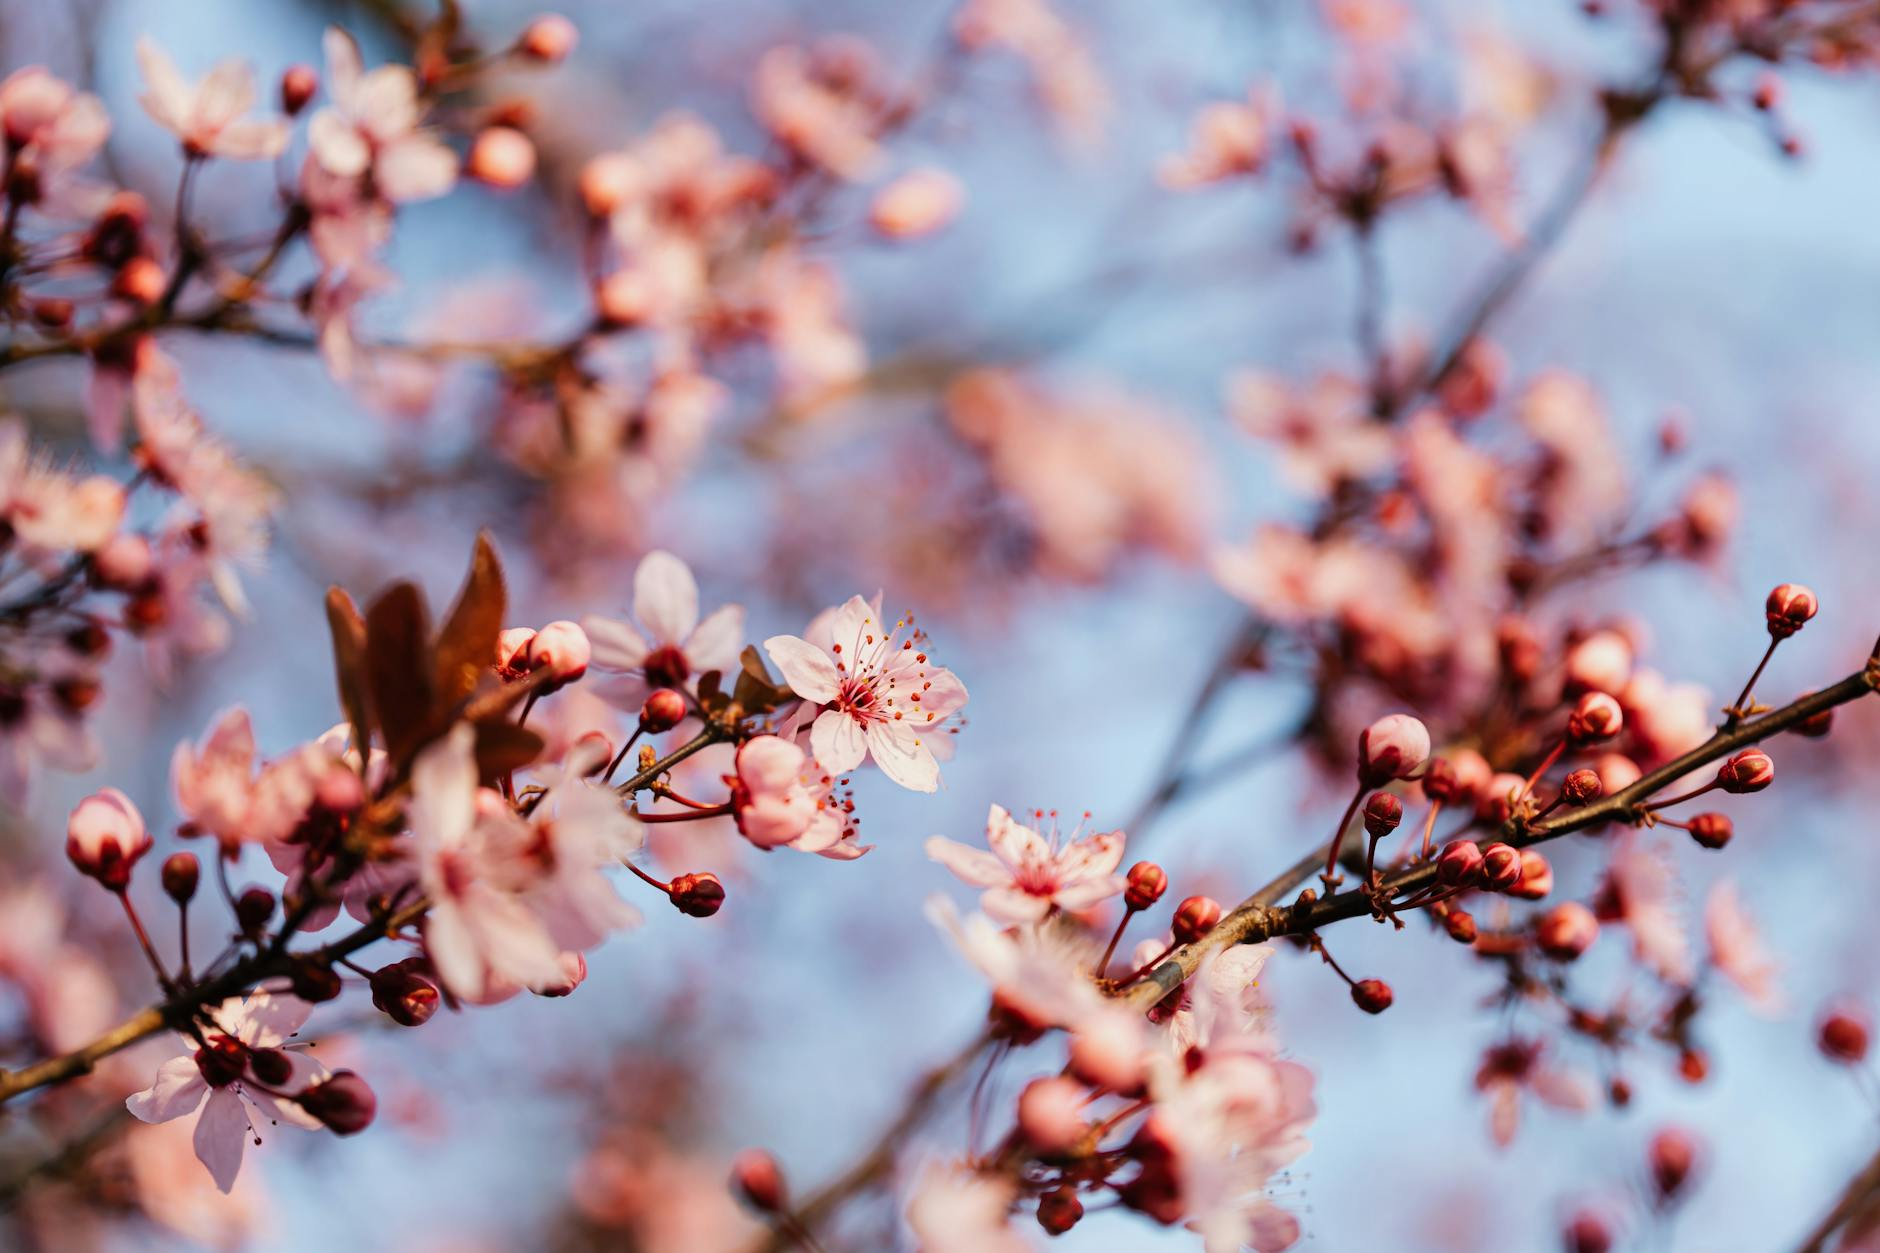 delicate pink flowers of blooming tree